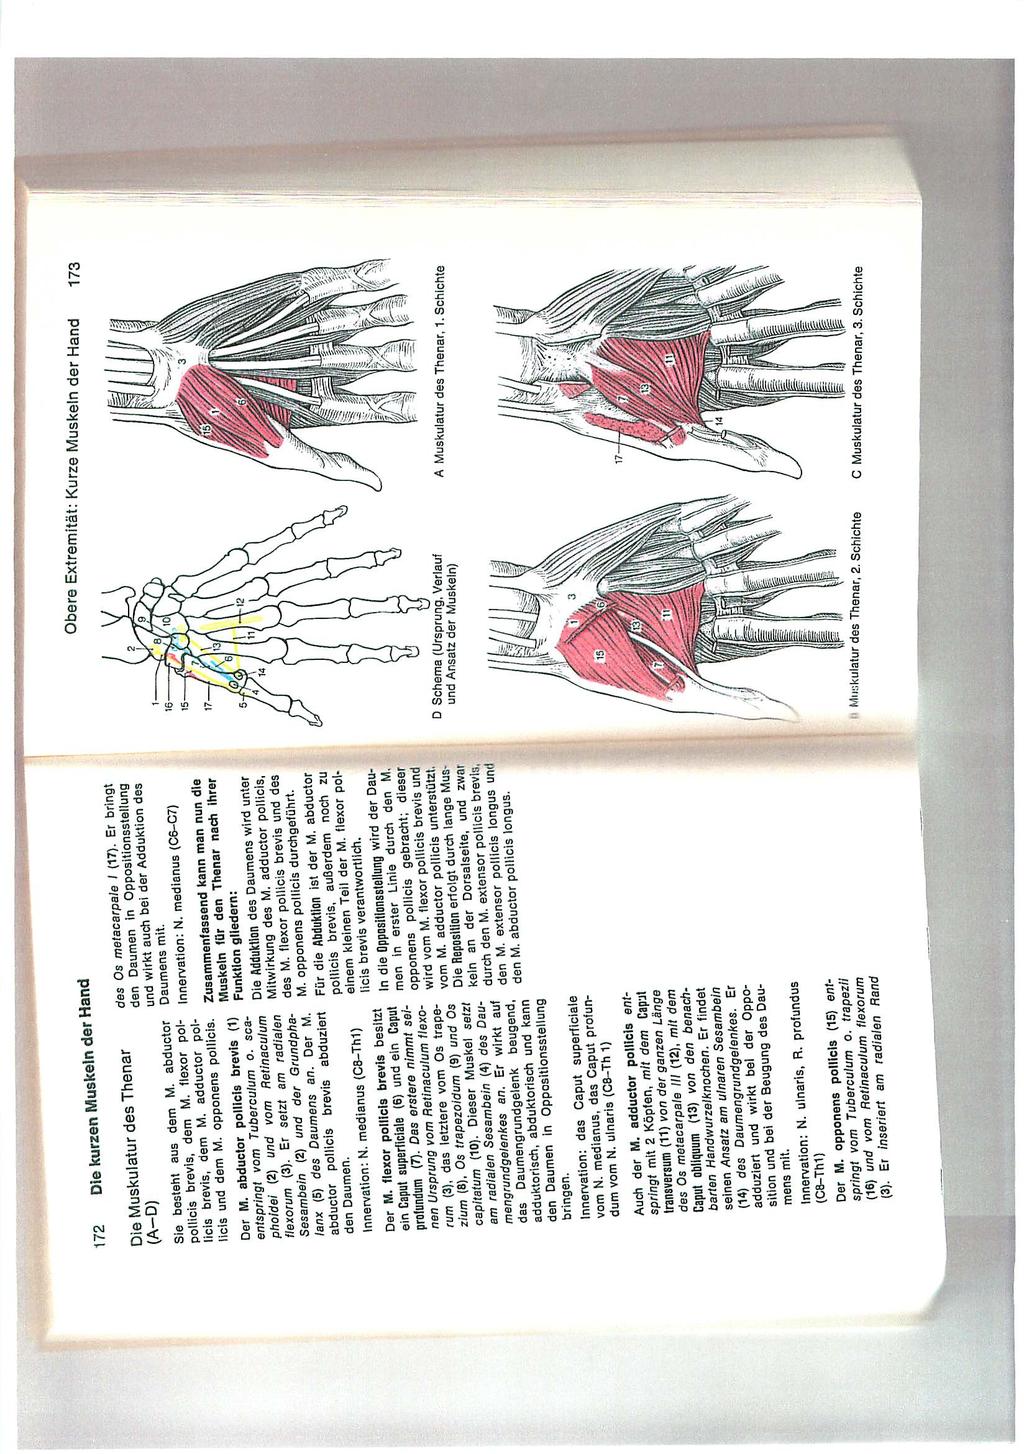 Diese Fähigkeit zur Opposition des Daumens ist grundlegend für den Gebrauch der menschlichen Hand Betrachten wir die Anatomie der Hand unter diesem Gesichtspunkt: Hier ein Bildauszug aus dem dtv -